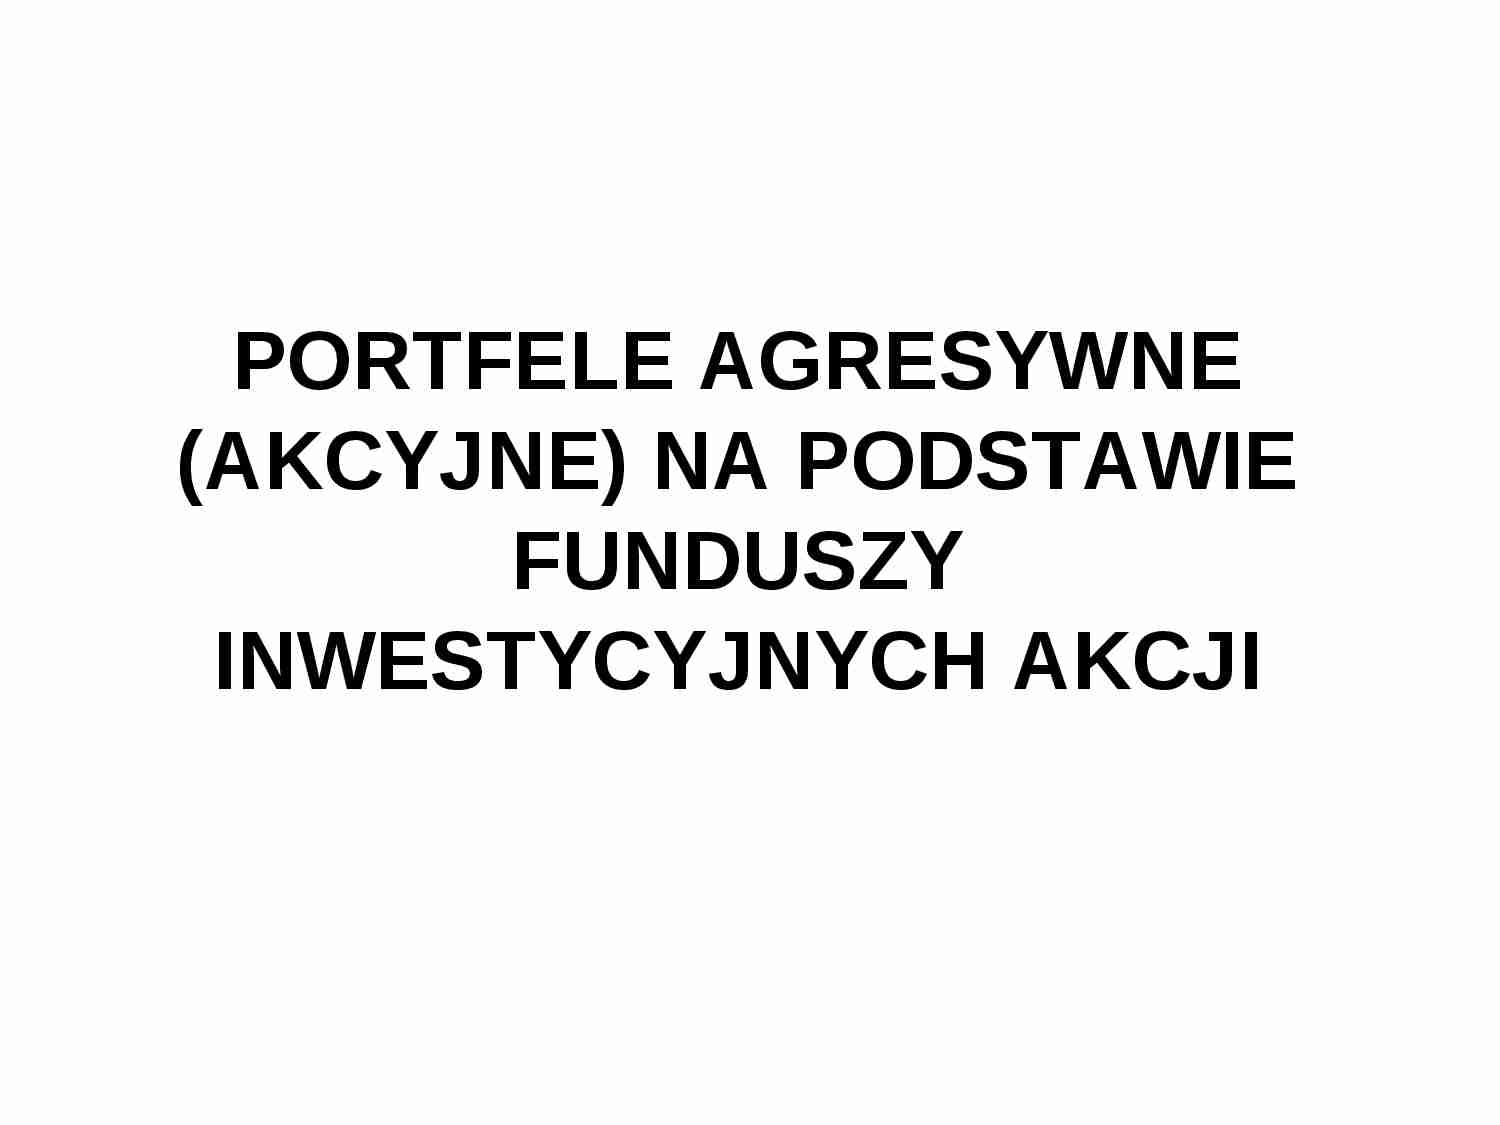 Portfele agresywne  (akcyjne)  na podstawie funduszy inwestycyjnych akcji - strona 1